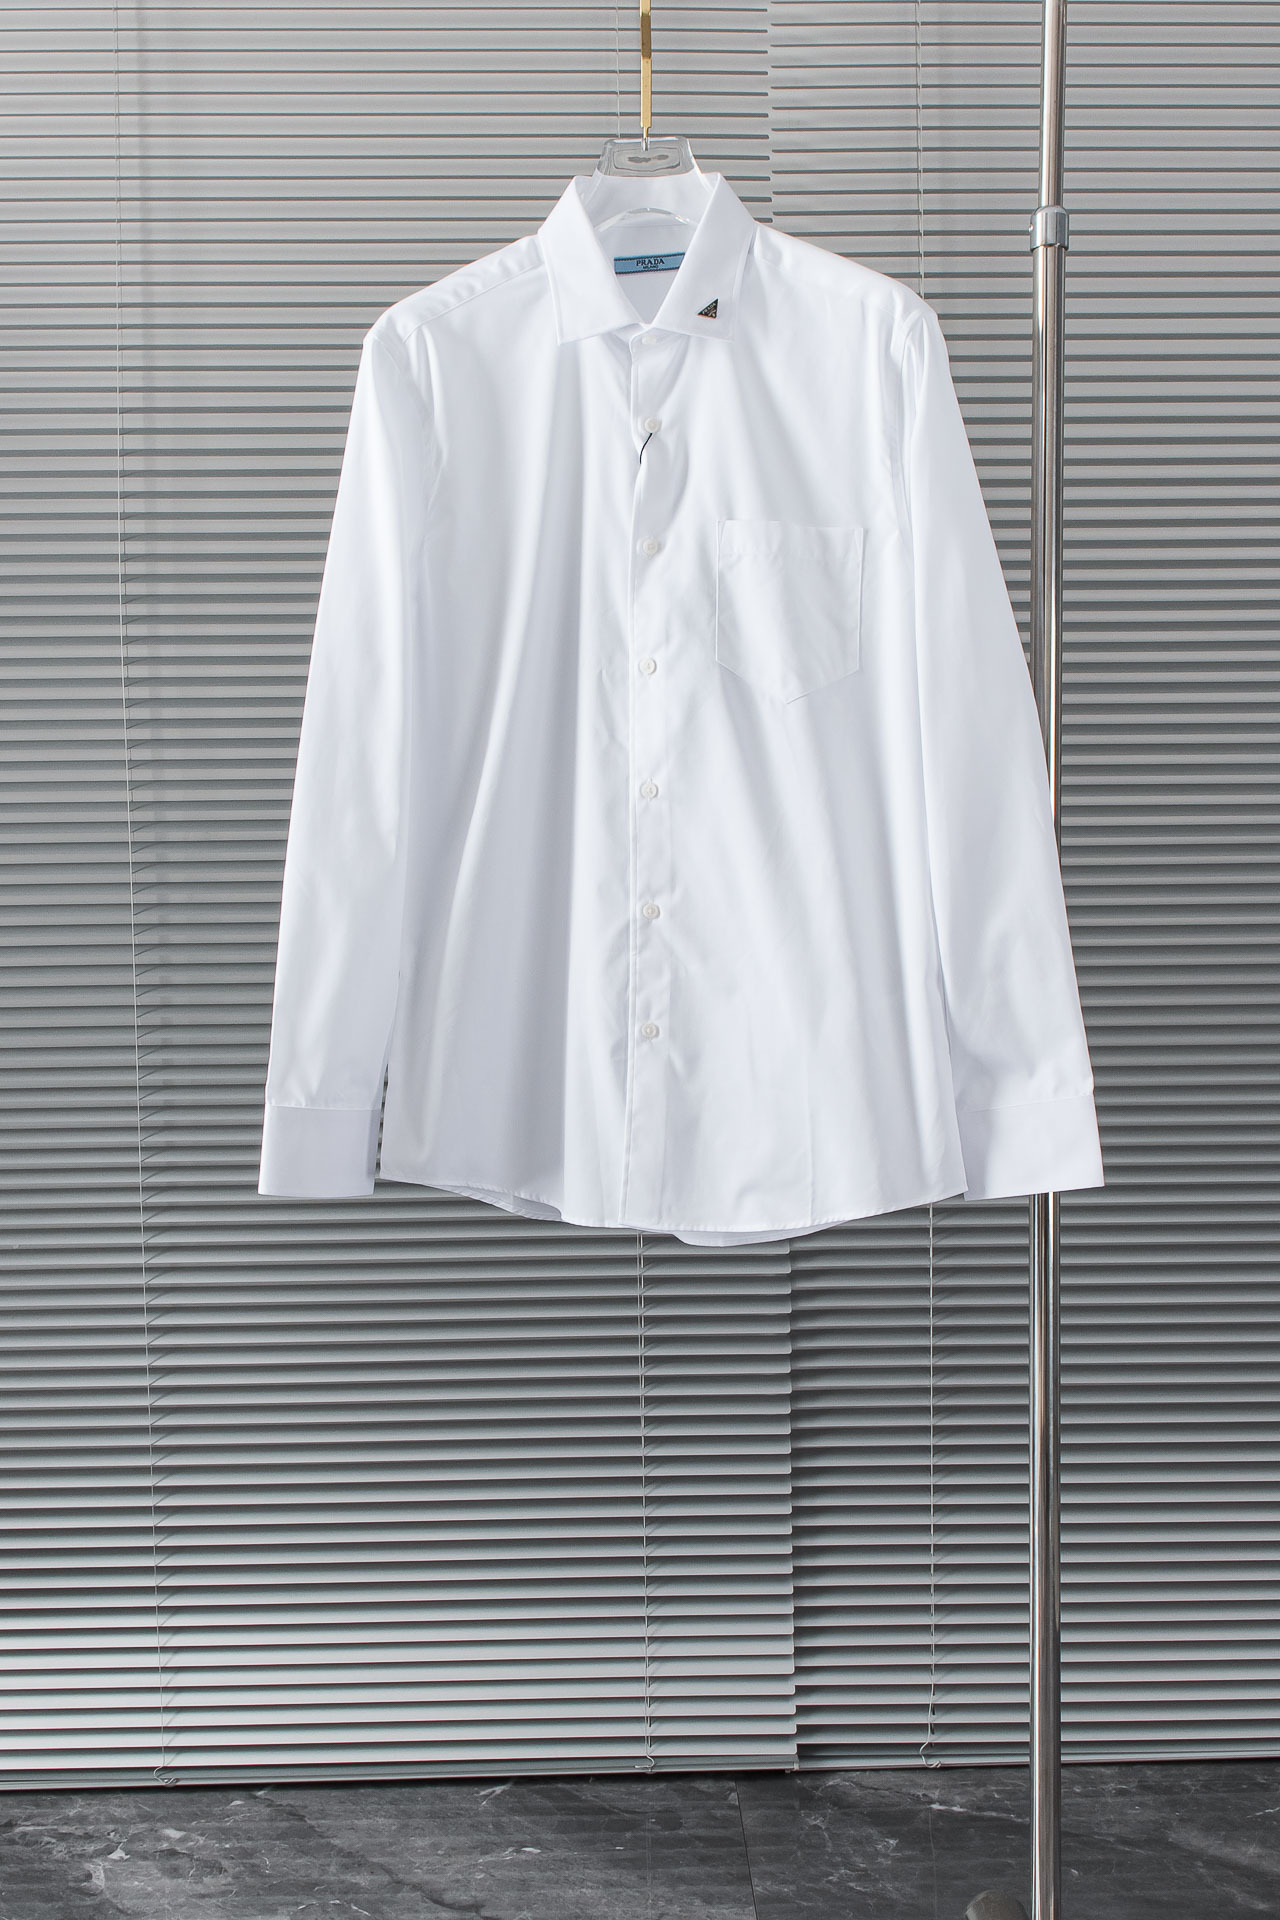 New#！！！普*达PR*DA高品质的珍藏级进口高织棉男士条纹长袖衬衫!24FW秋冬新款高品质的奢品者首